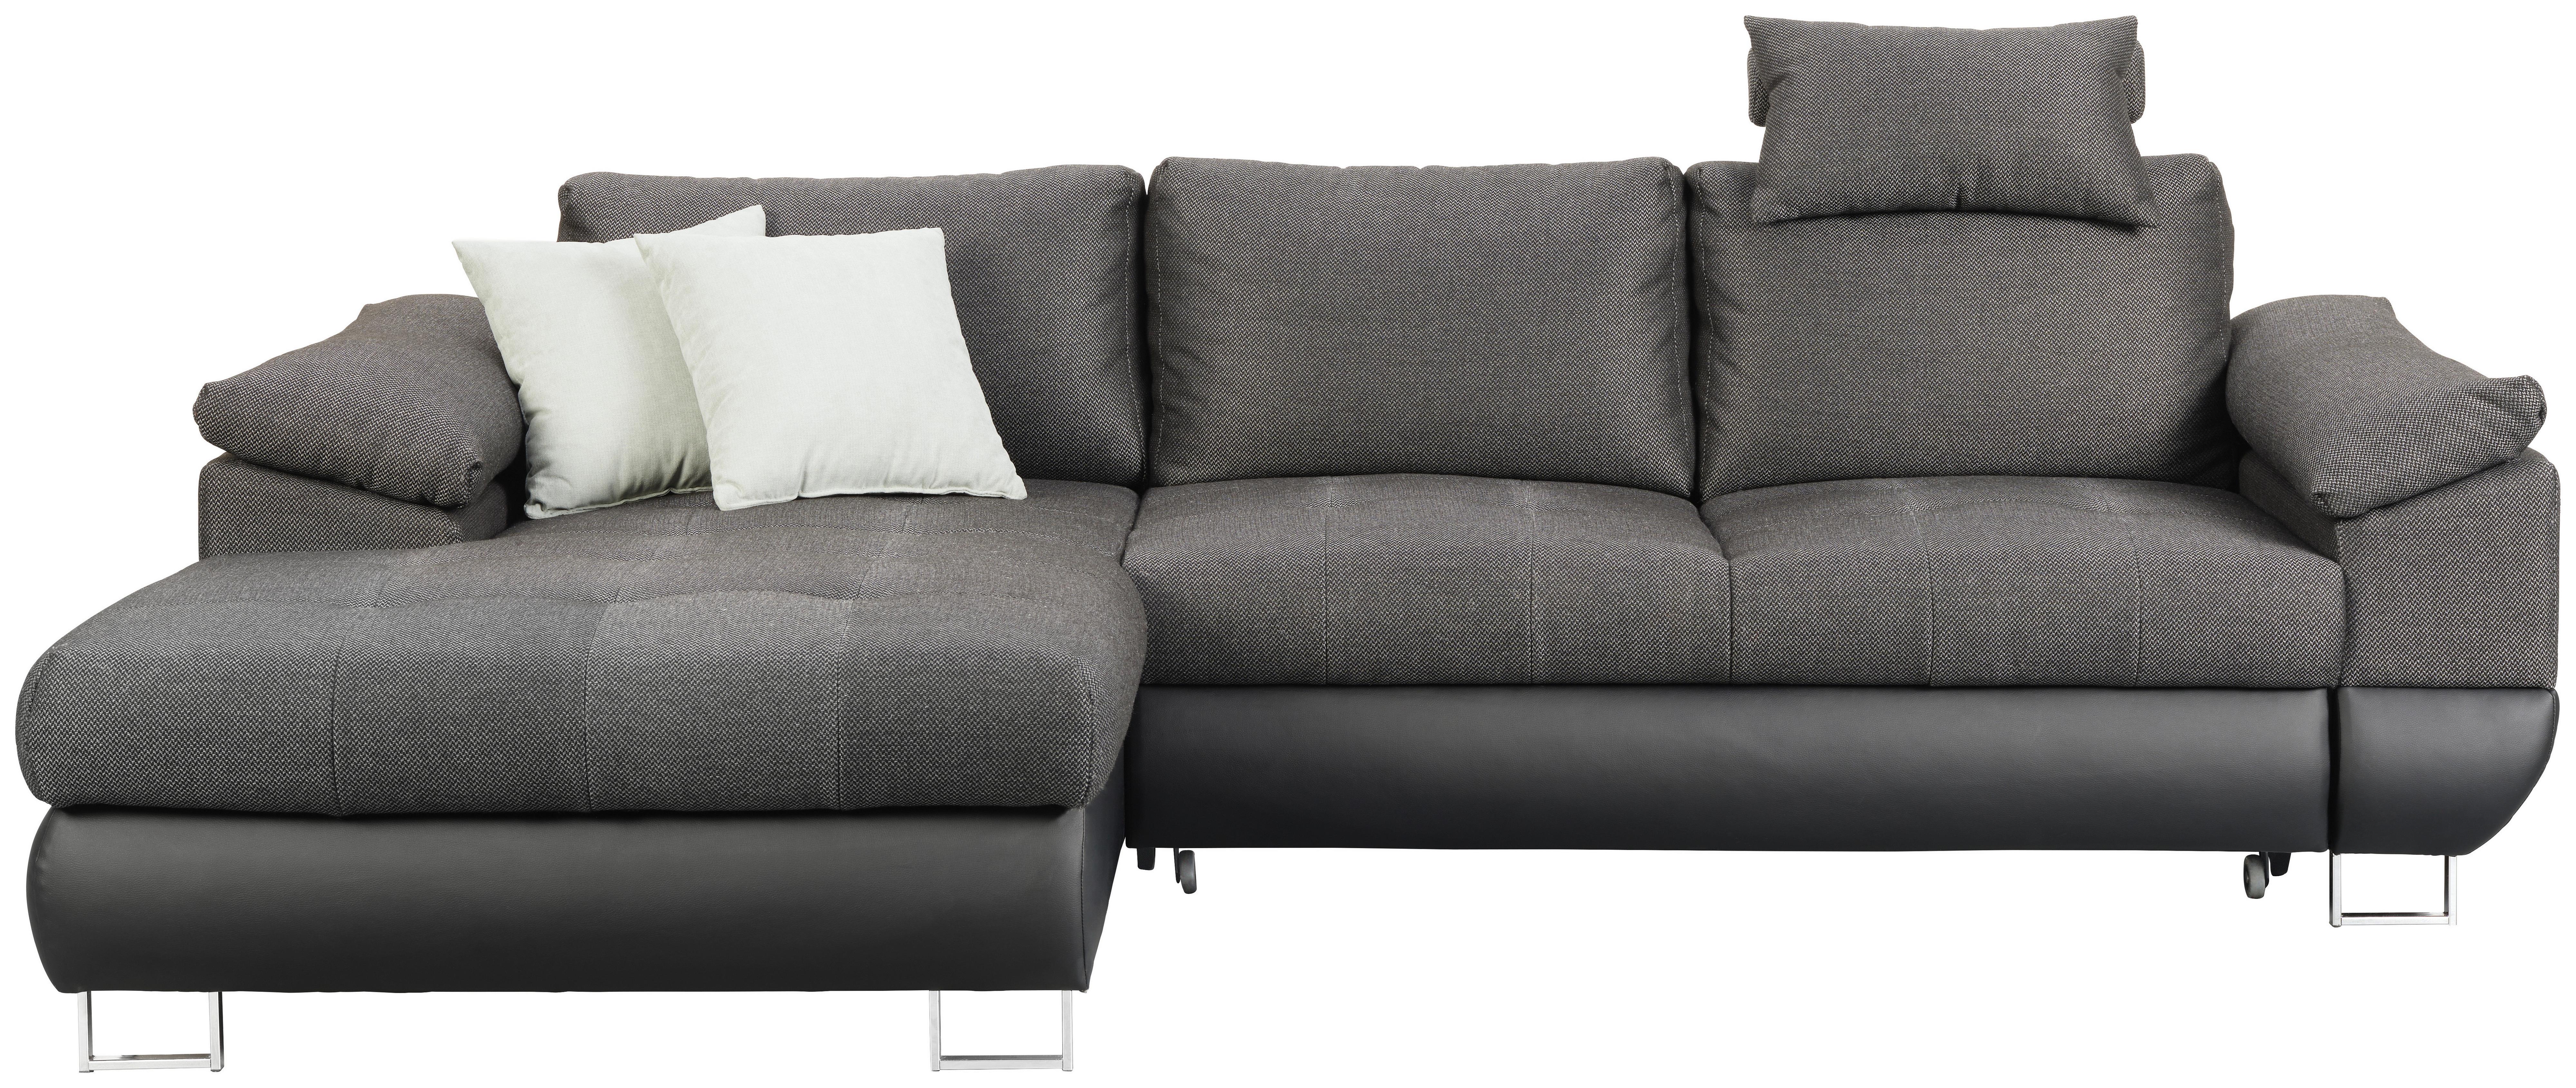 Sedežna Garnitura Focus, Z Ležiščem - barve kroma/antracit, Konvencionalno, kovina/tekstil (268/91/170cm) - Top ponudba